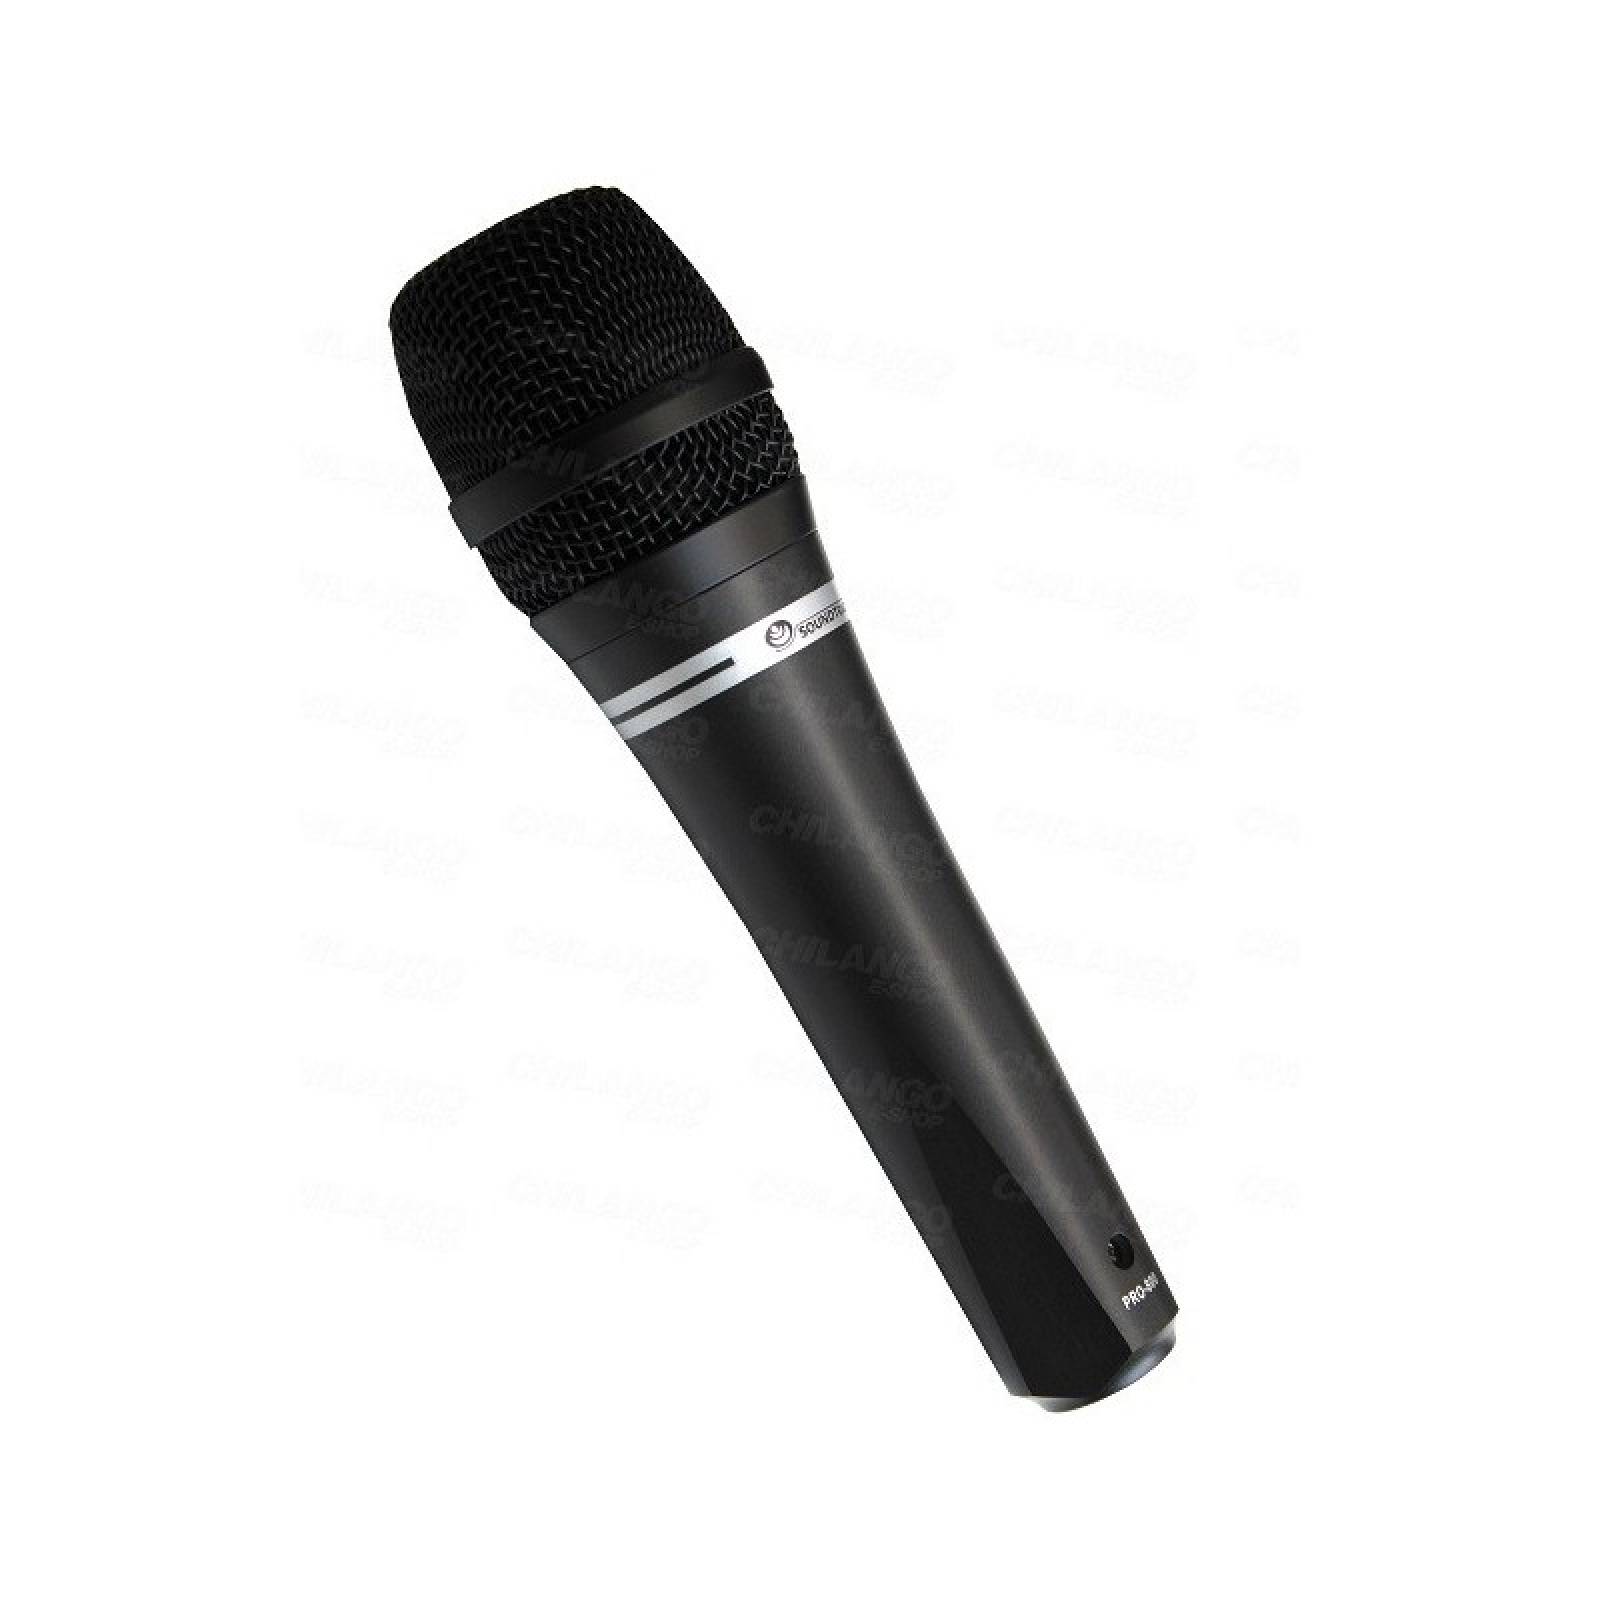 Microfono Dynamico Pro Unidireccional Soundtrack Pro 800 